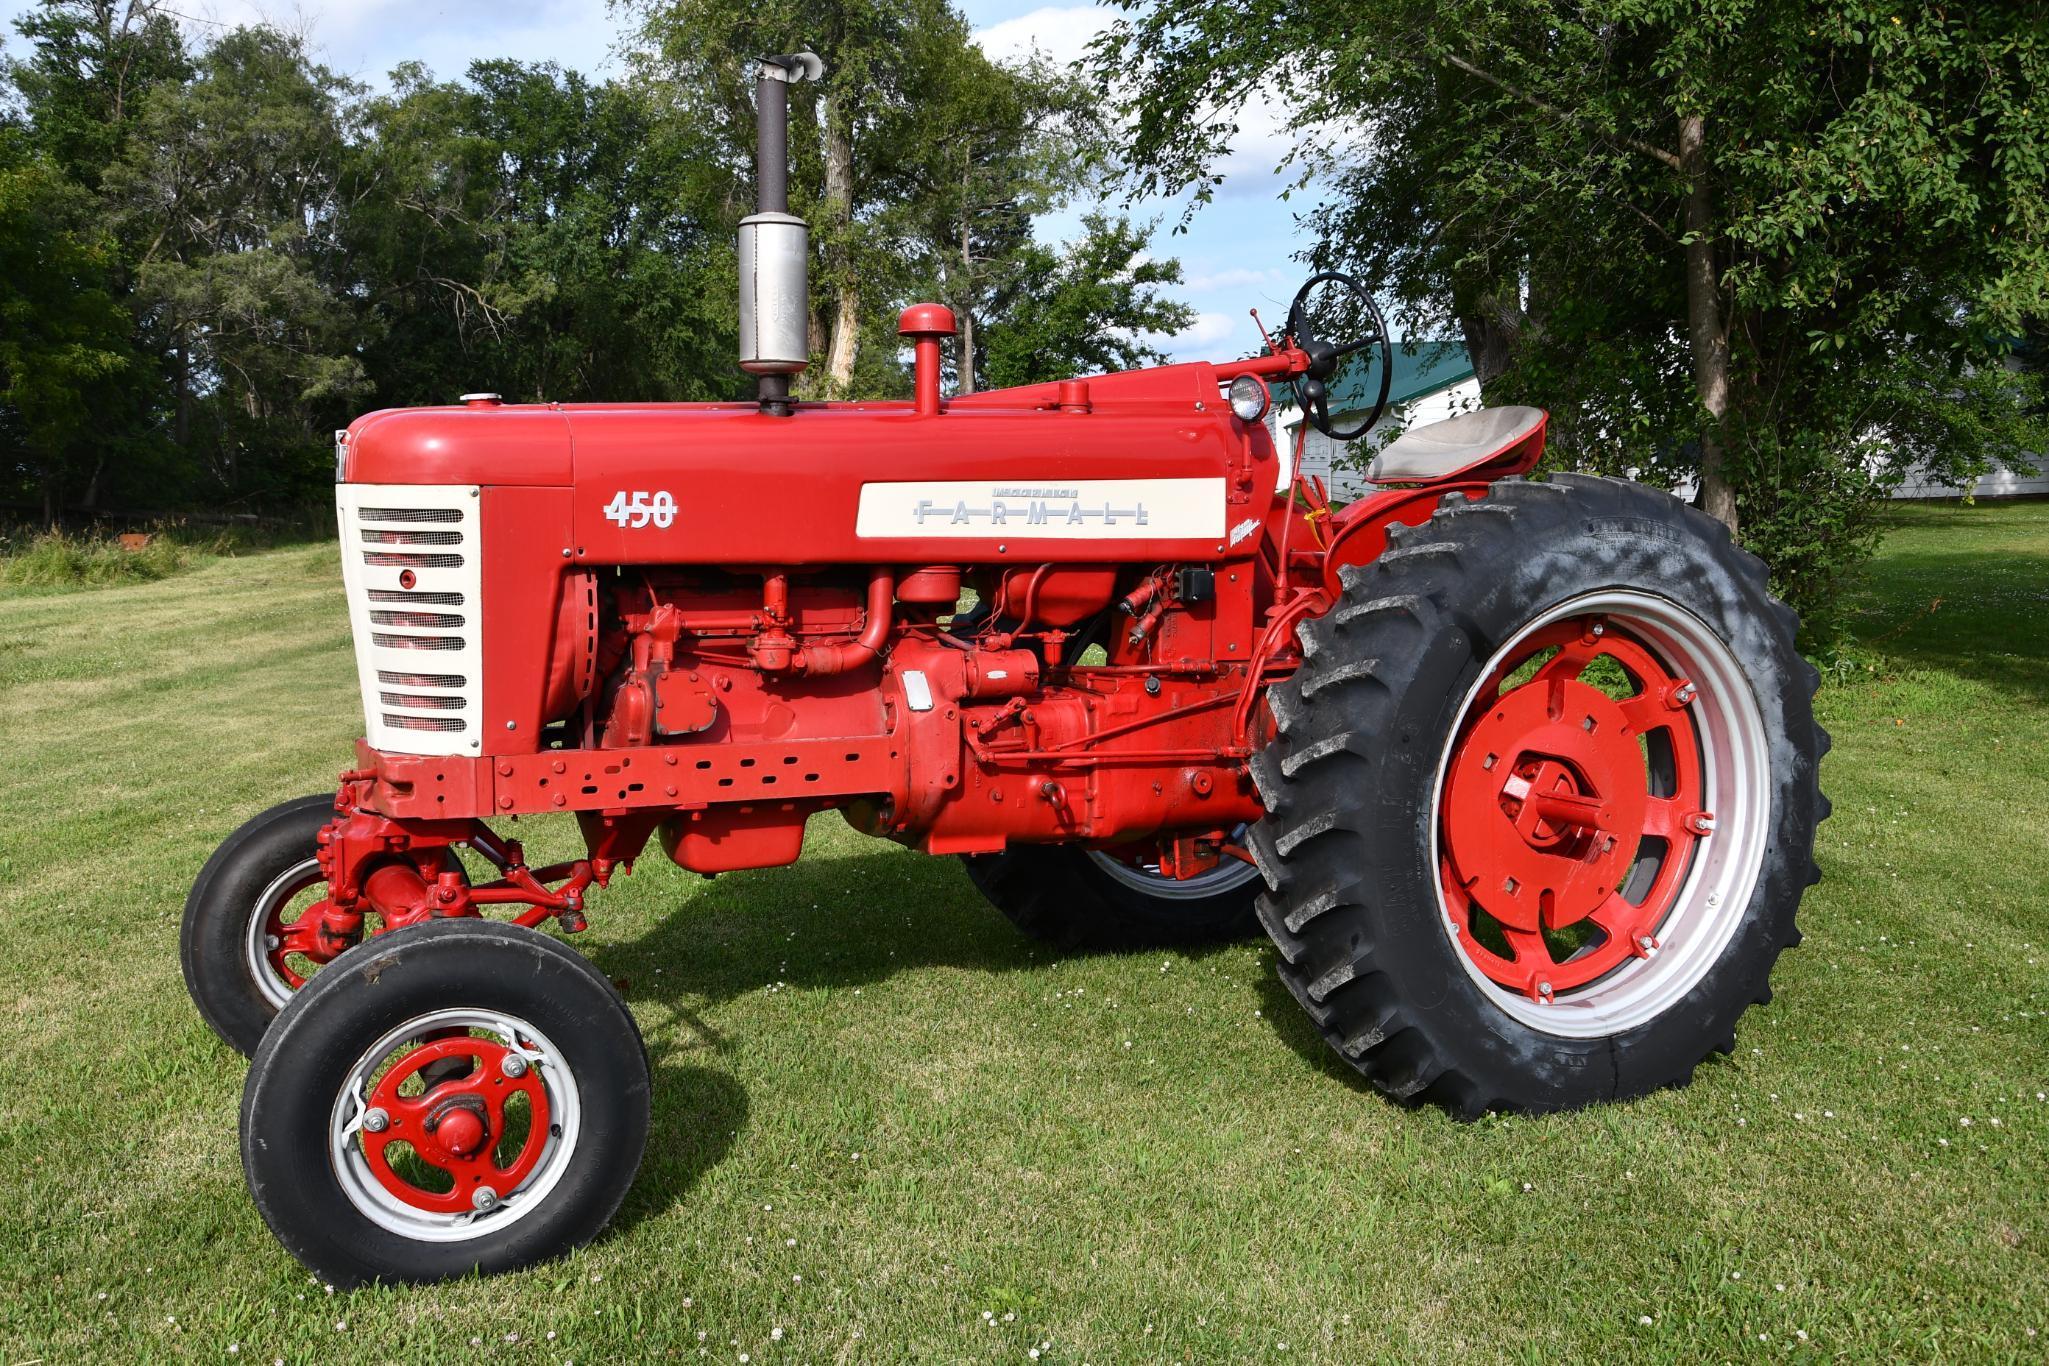 1957 Farmall 450 2wd tractor